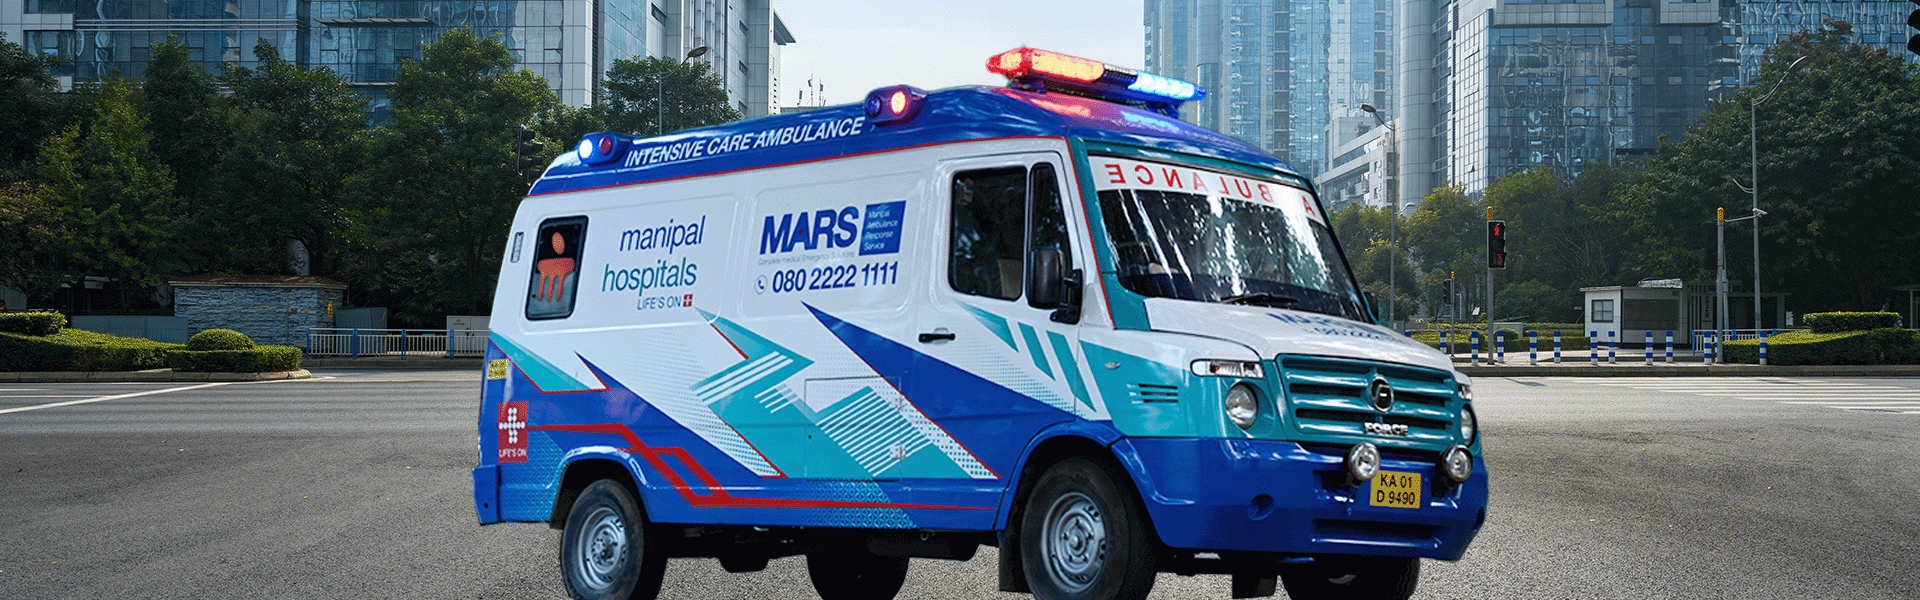 24 Hours Emergency Ambulance Service in Doddaballapur, Bangalore -Manipal Hospitals